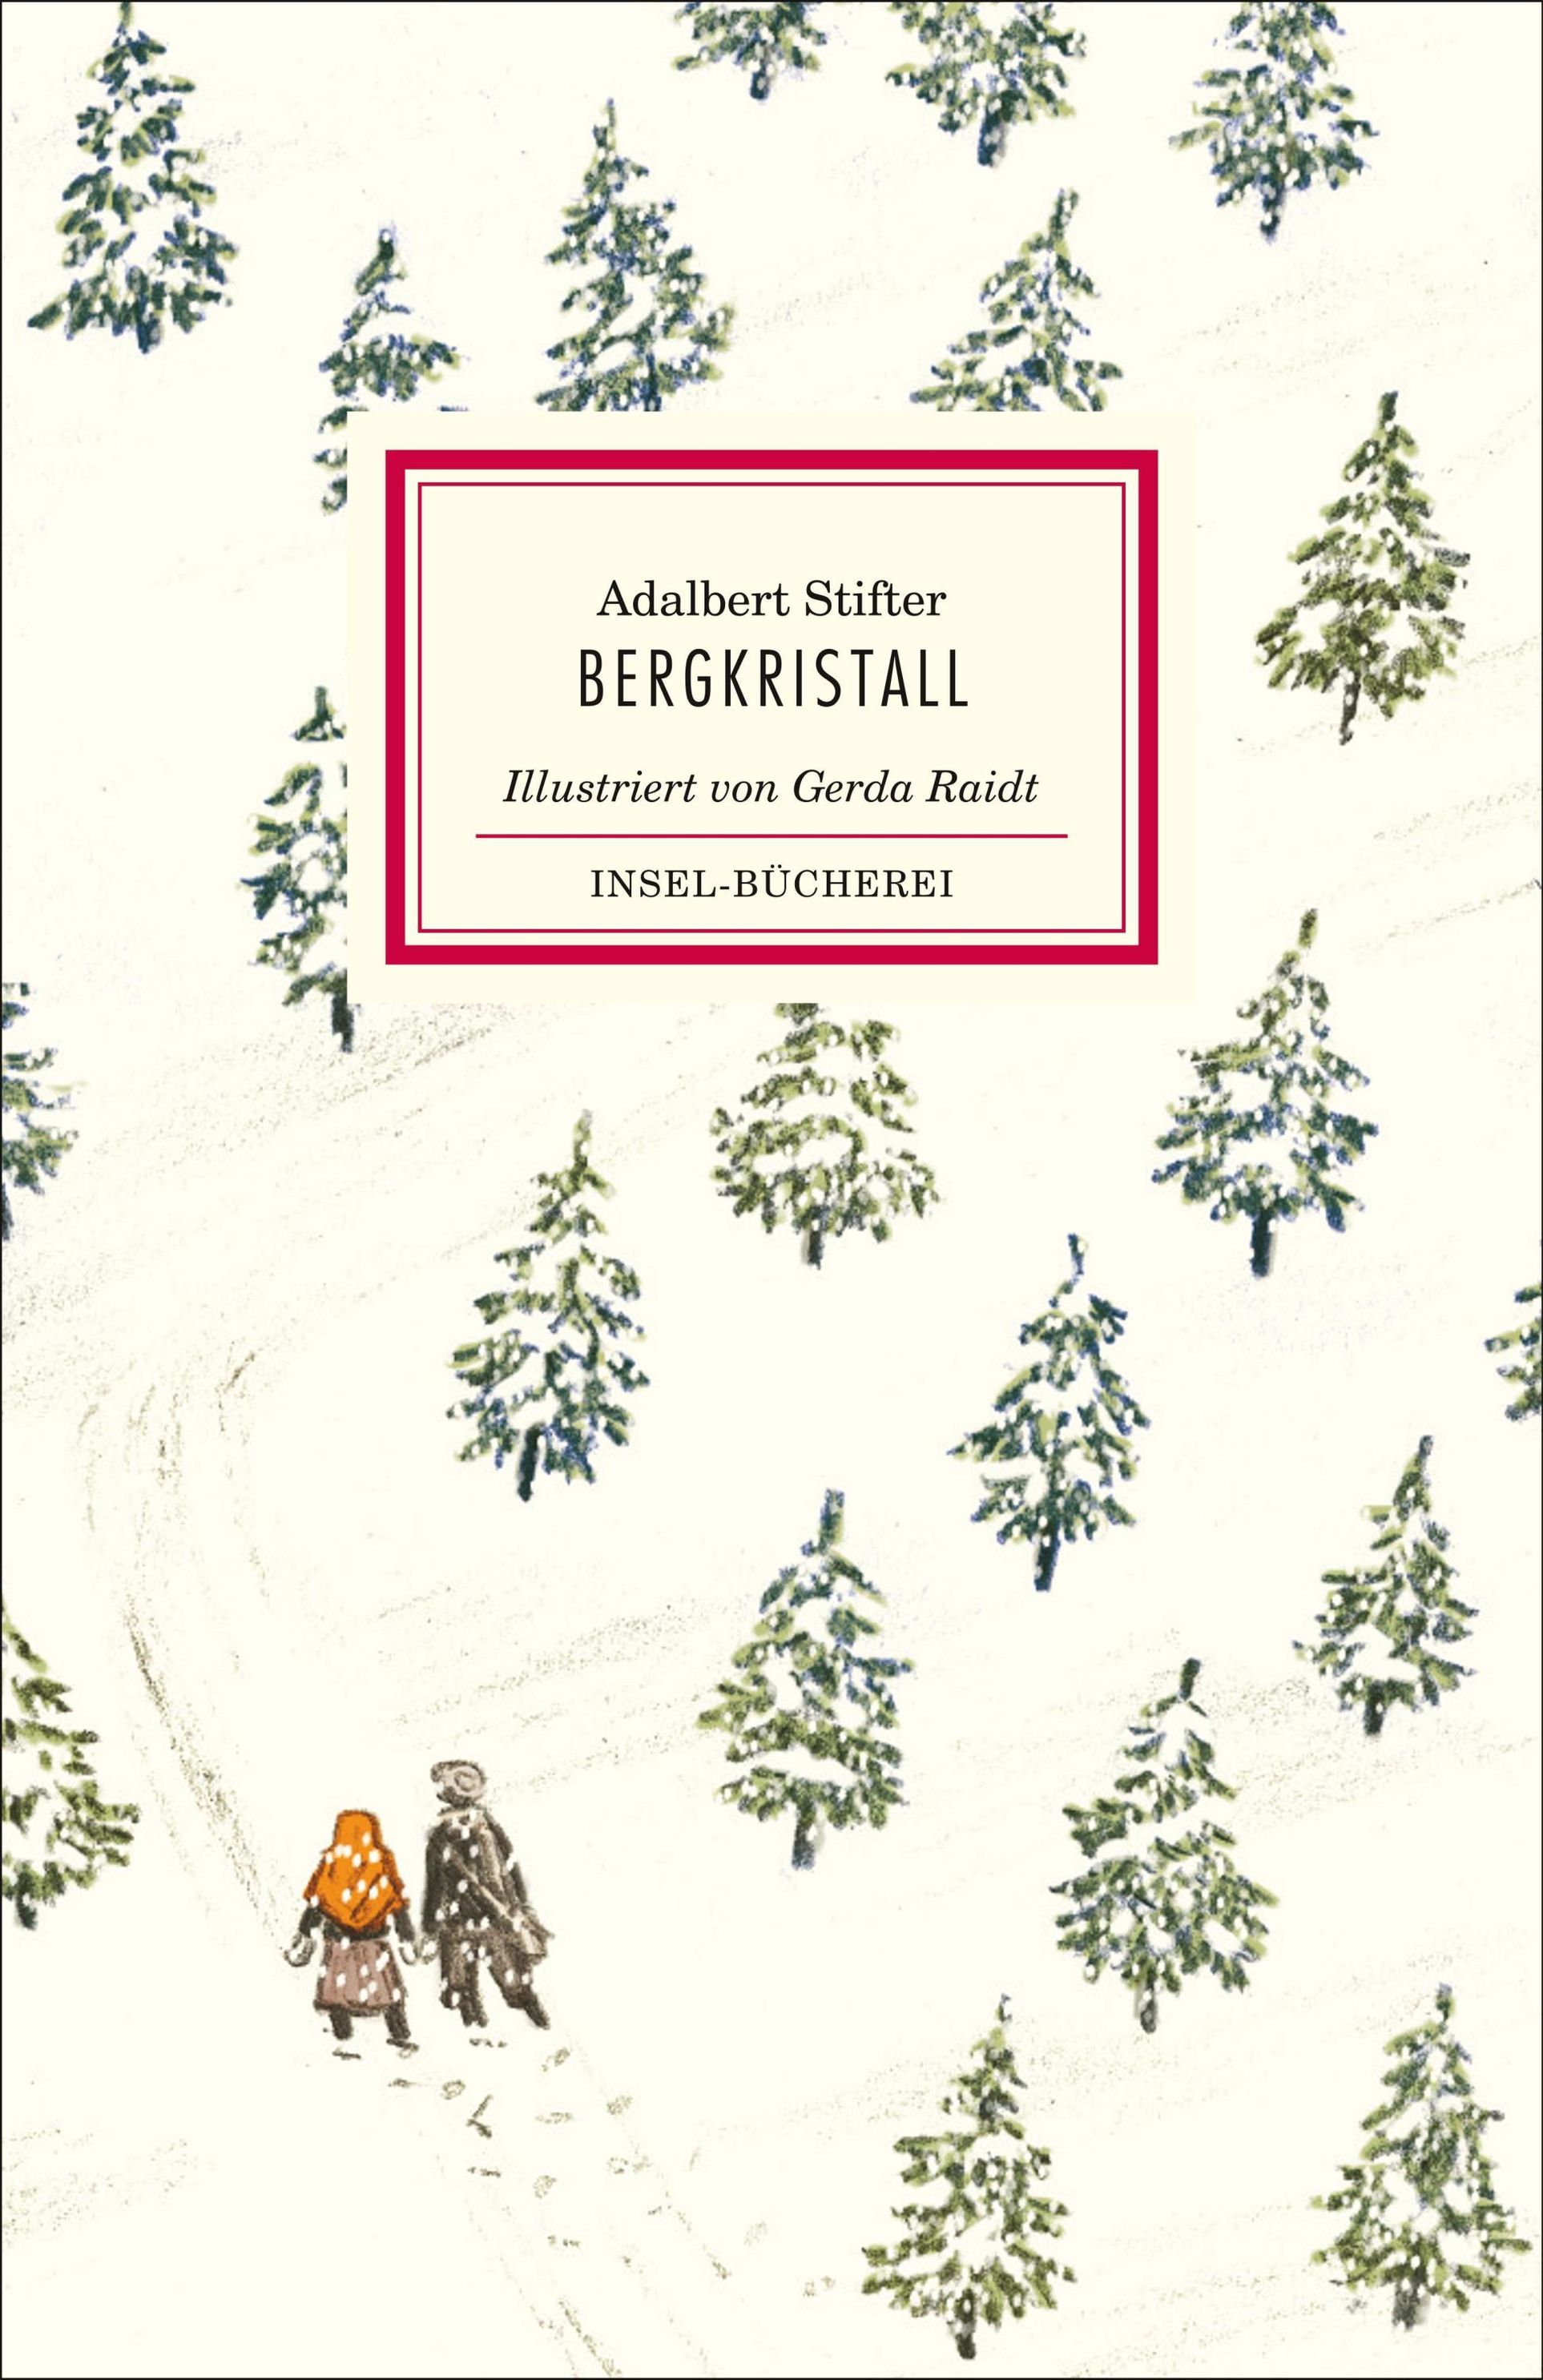 Bergkristall Buch von Adalbert Stifter versandkostenfrei bei Weltbild.at